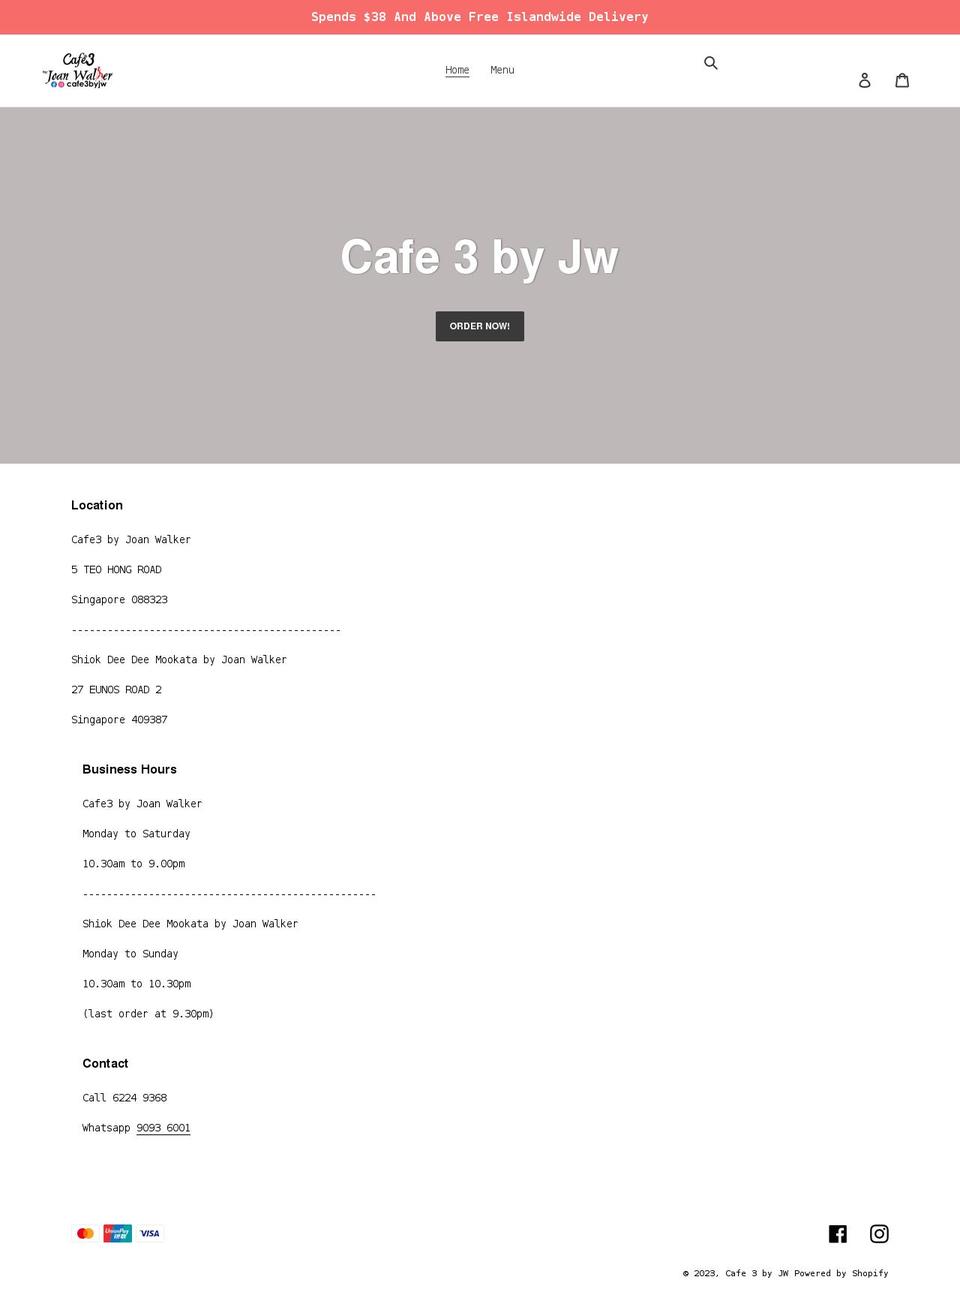 cafe3.com.sg shopify website screenshot